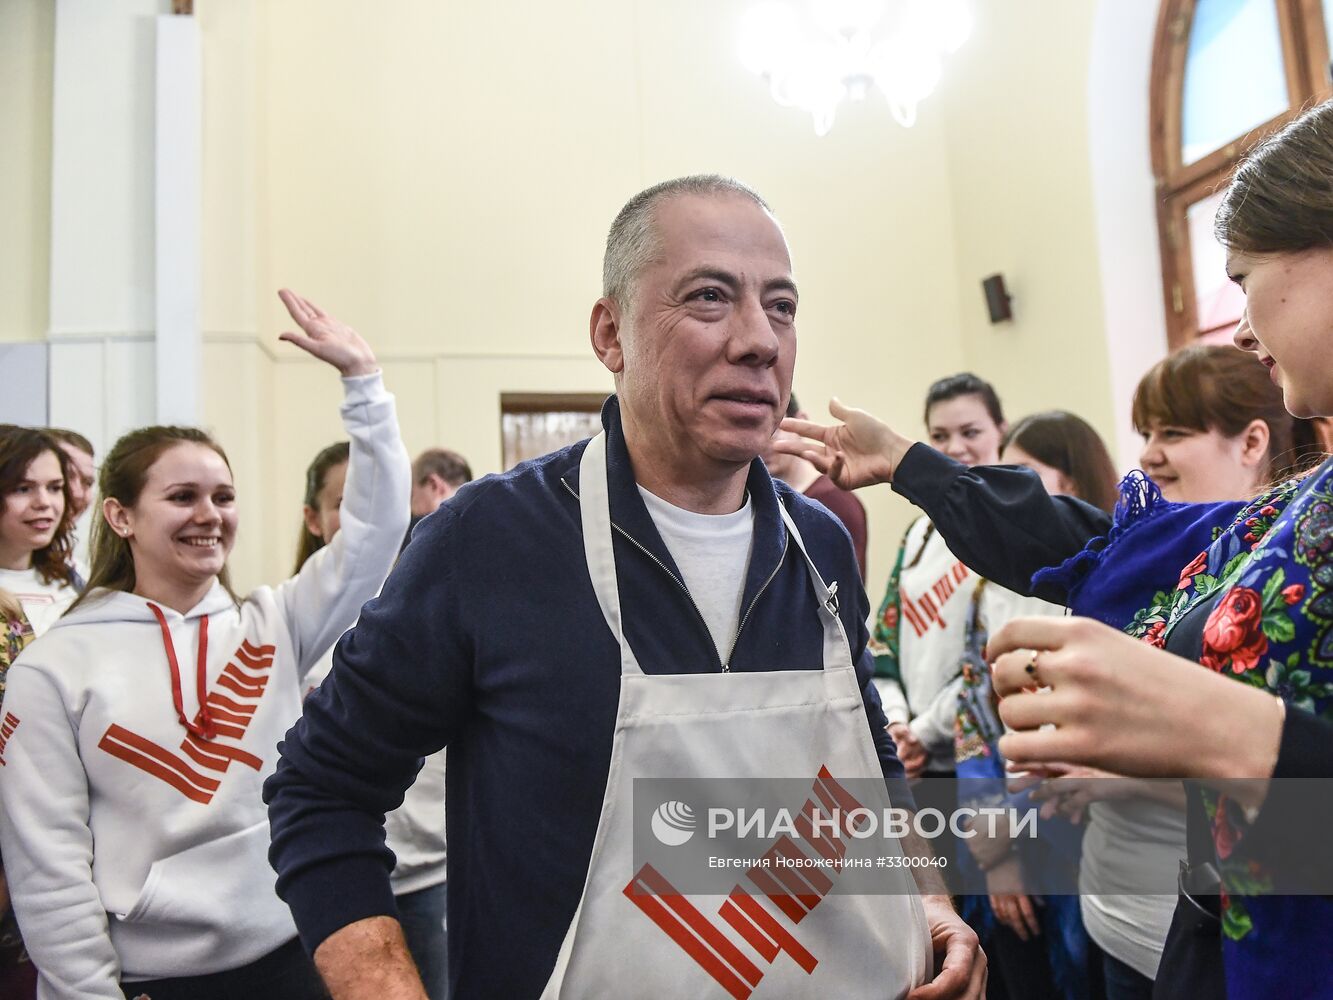 Празднование масленицы в избирательном штабе В. Путина